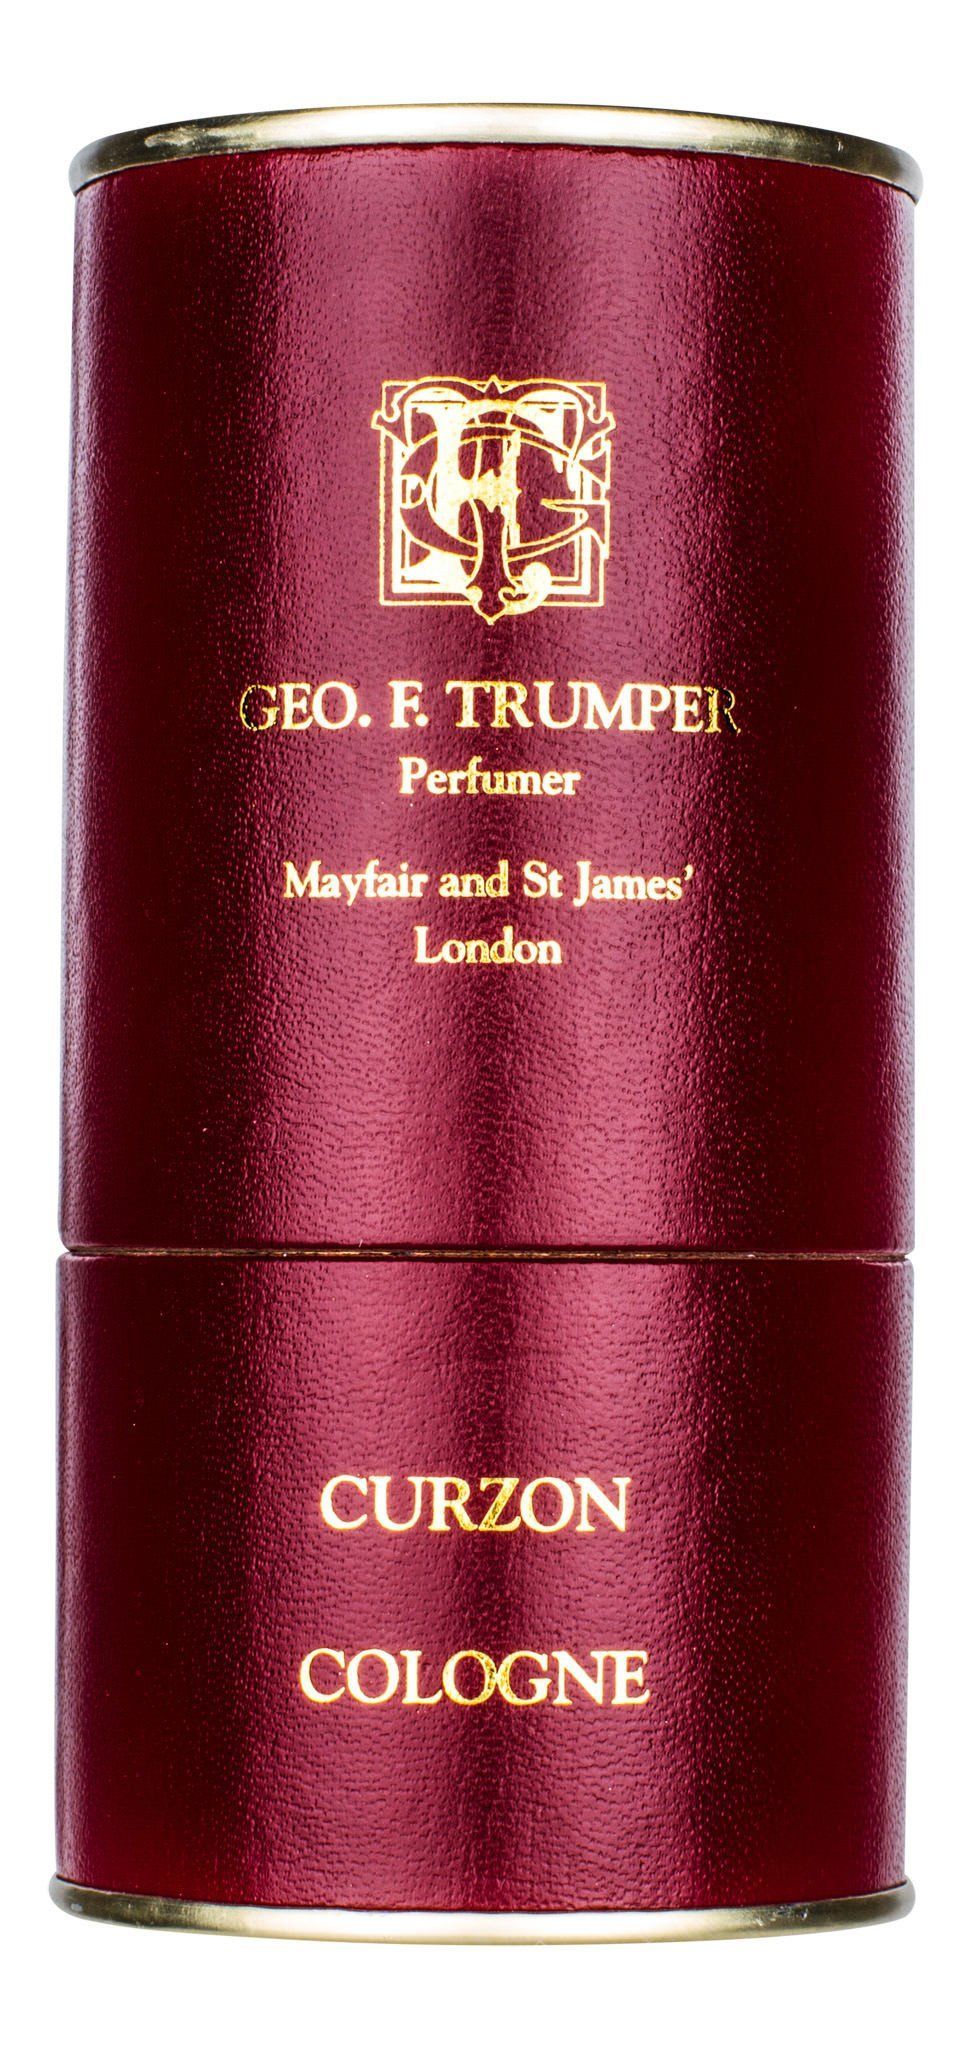 Geo F. Trumper Cologne - Curzon